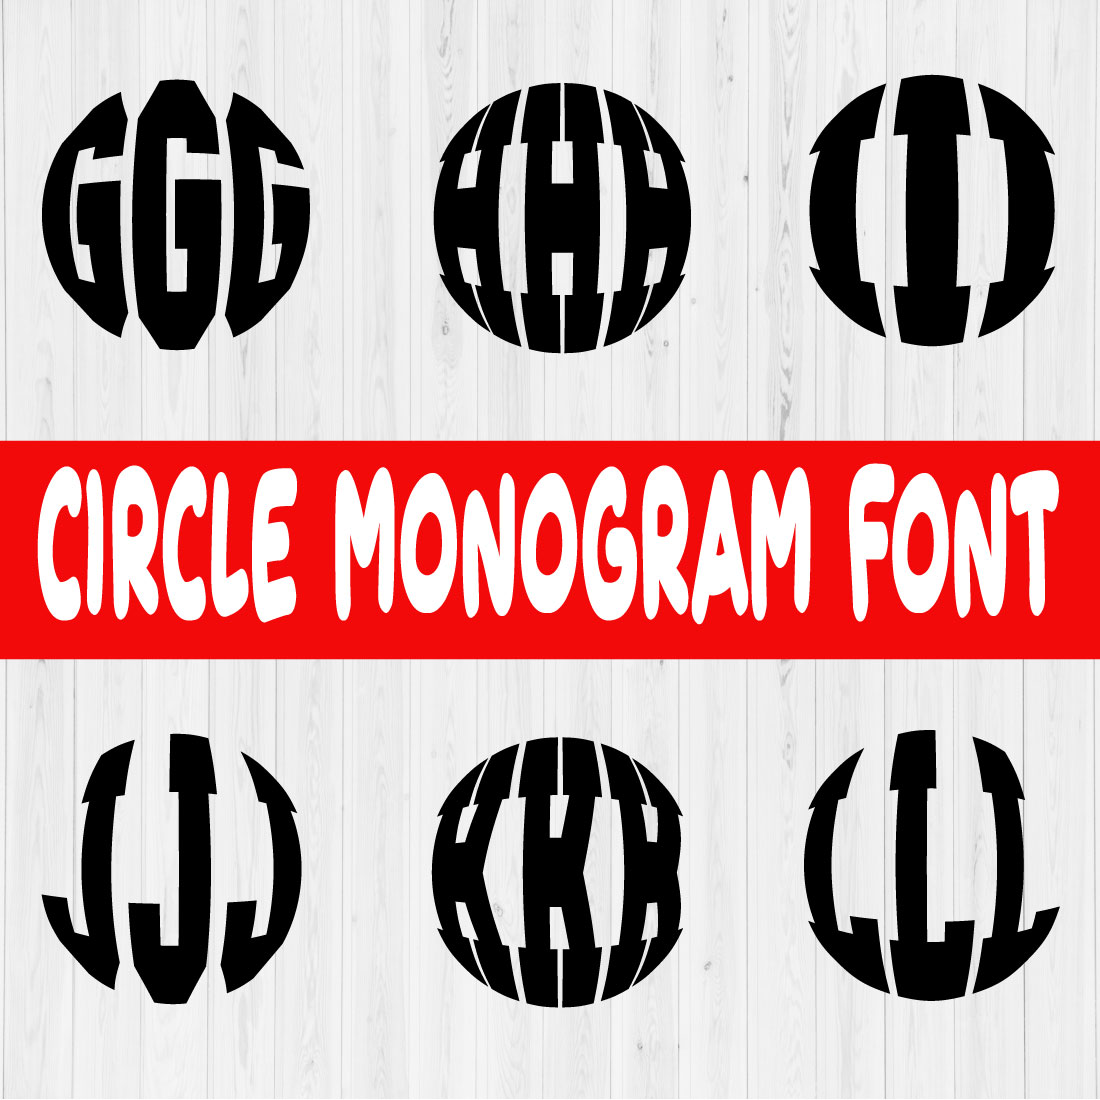 Circle Monogram Font Vol2 cover image.